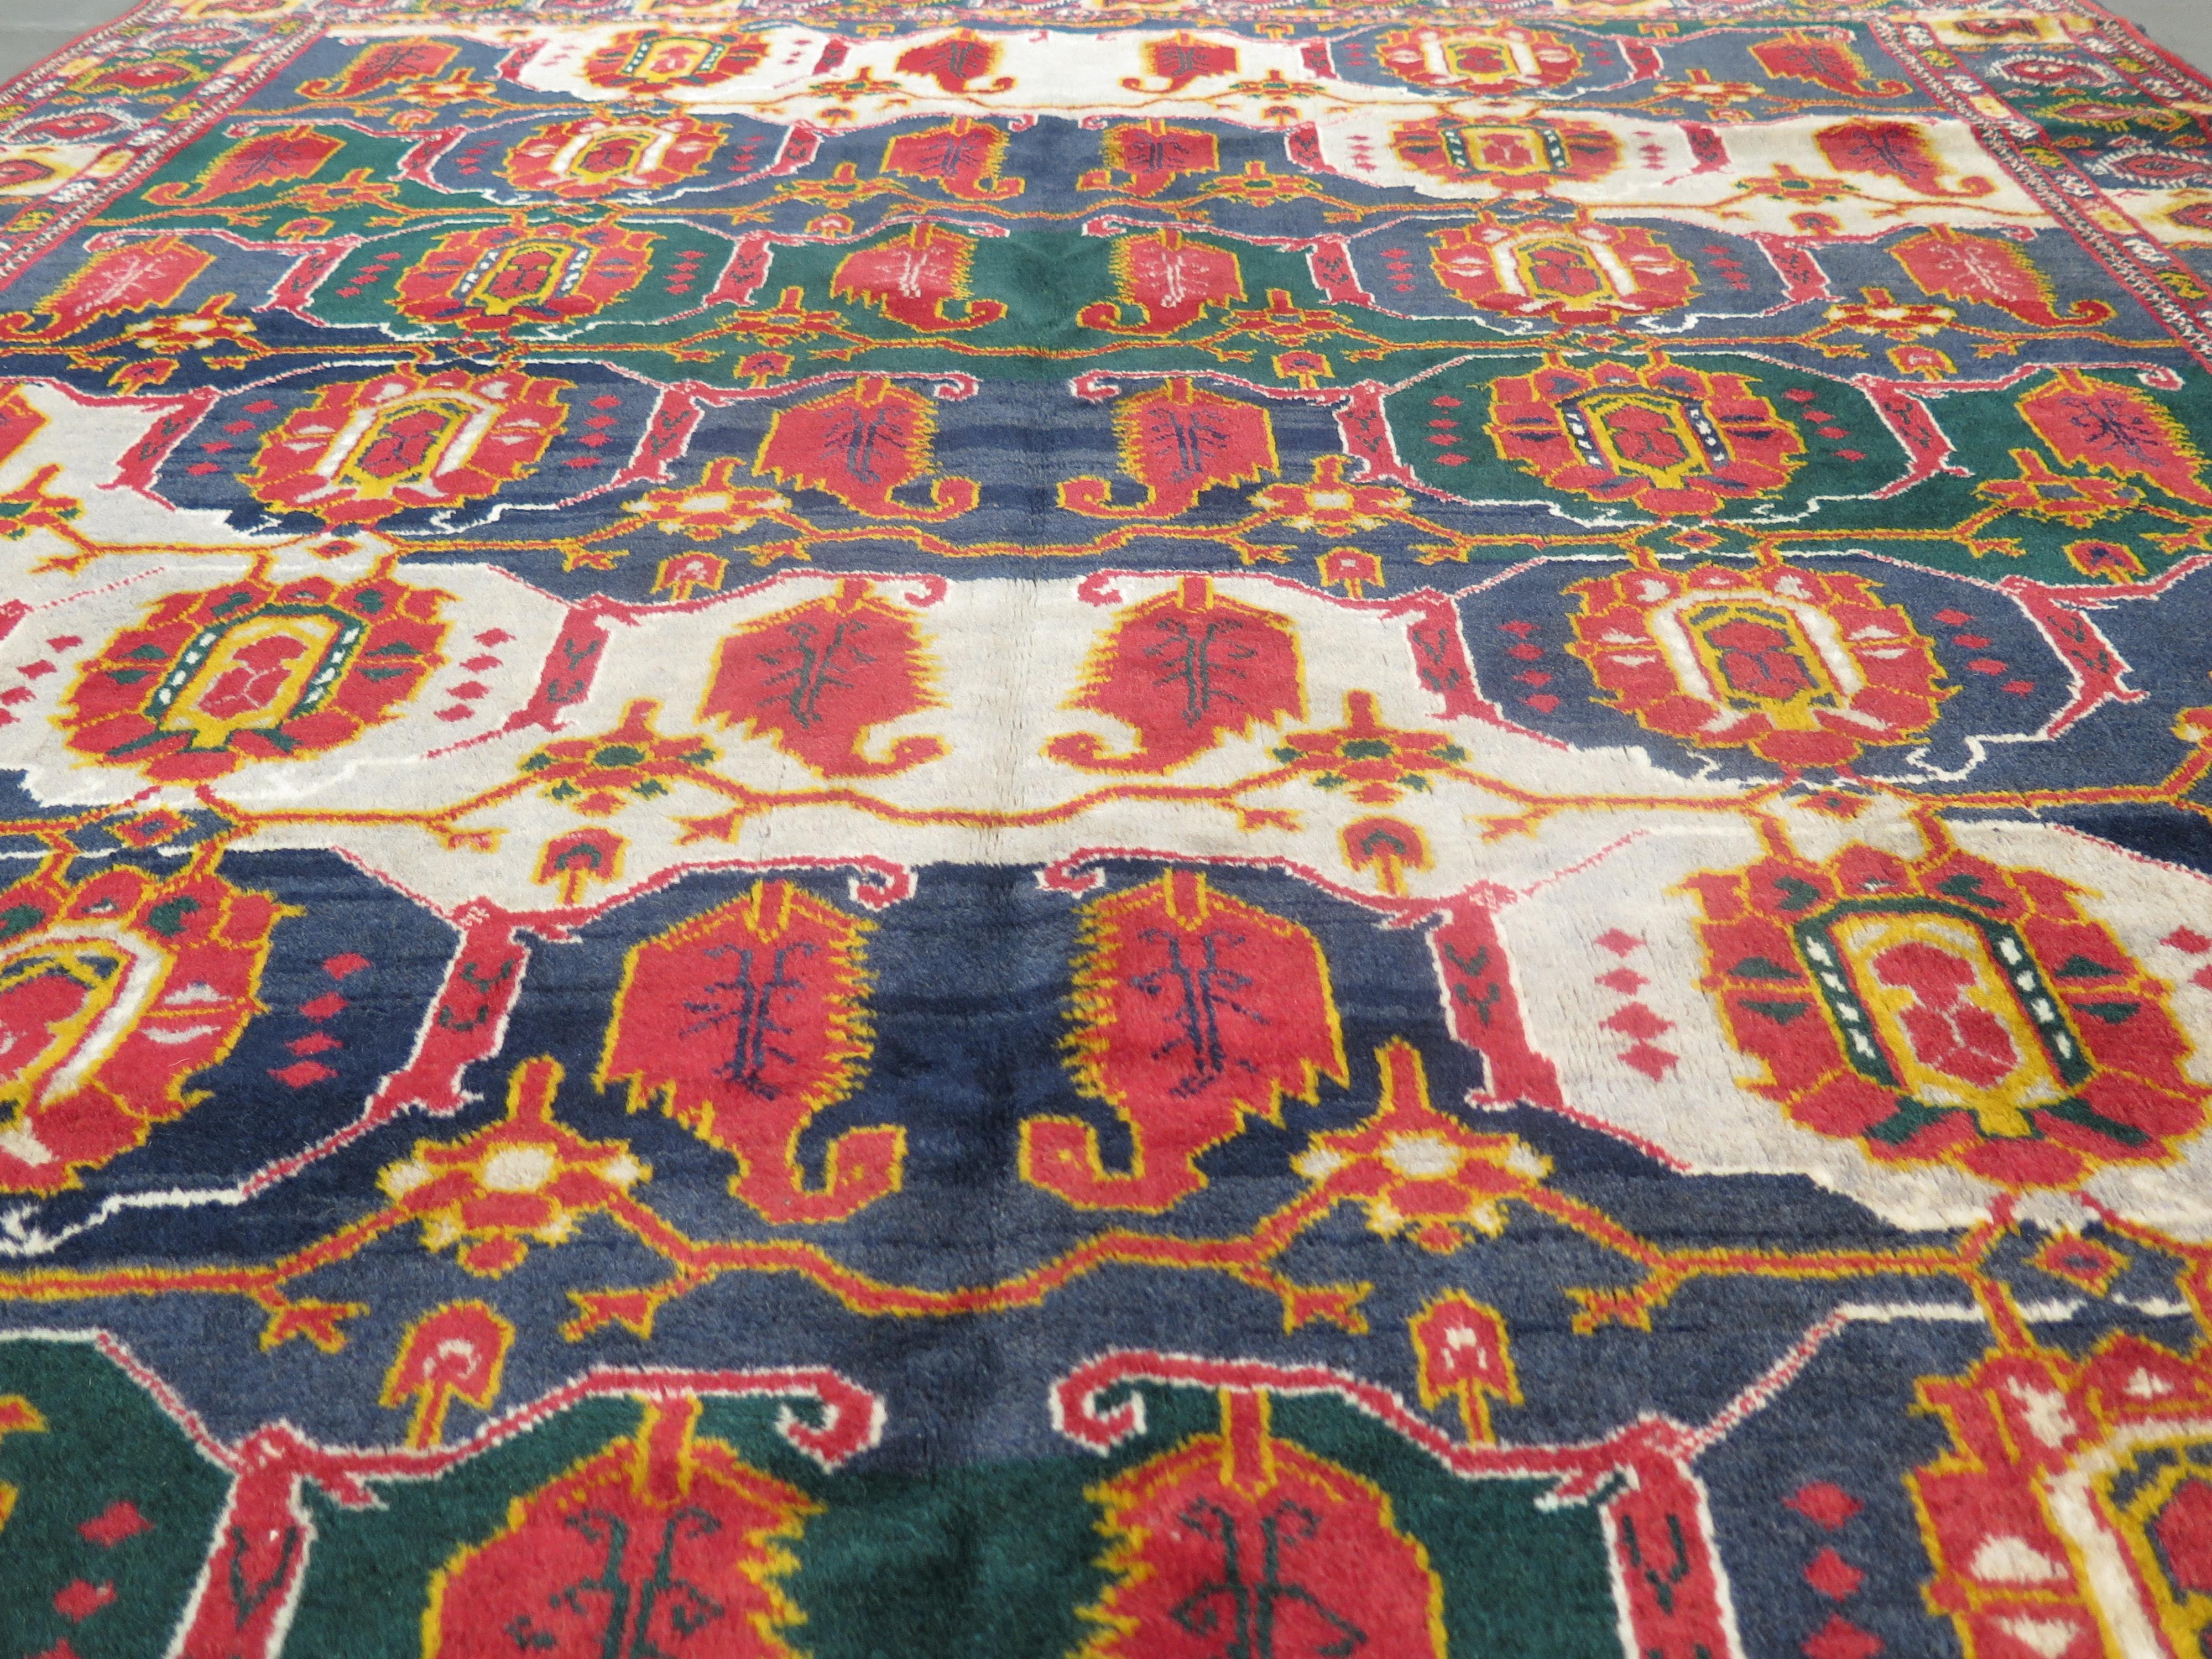 Beshir-Teppiche werden von den Stammesangehörigen der Beshir in Turkmenistan gewebt und sind für ihren unverwechselbaren Webstil in einer Region bekannt, in der Teppiche vor allem durch ihre 